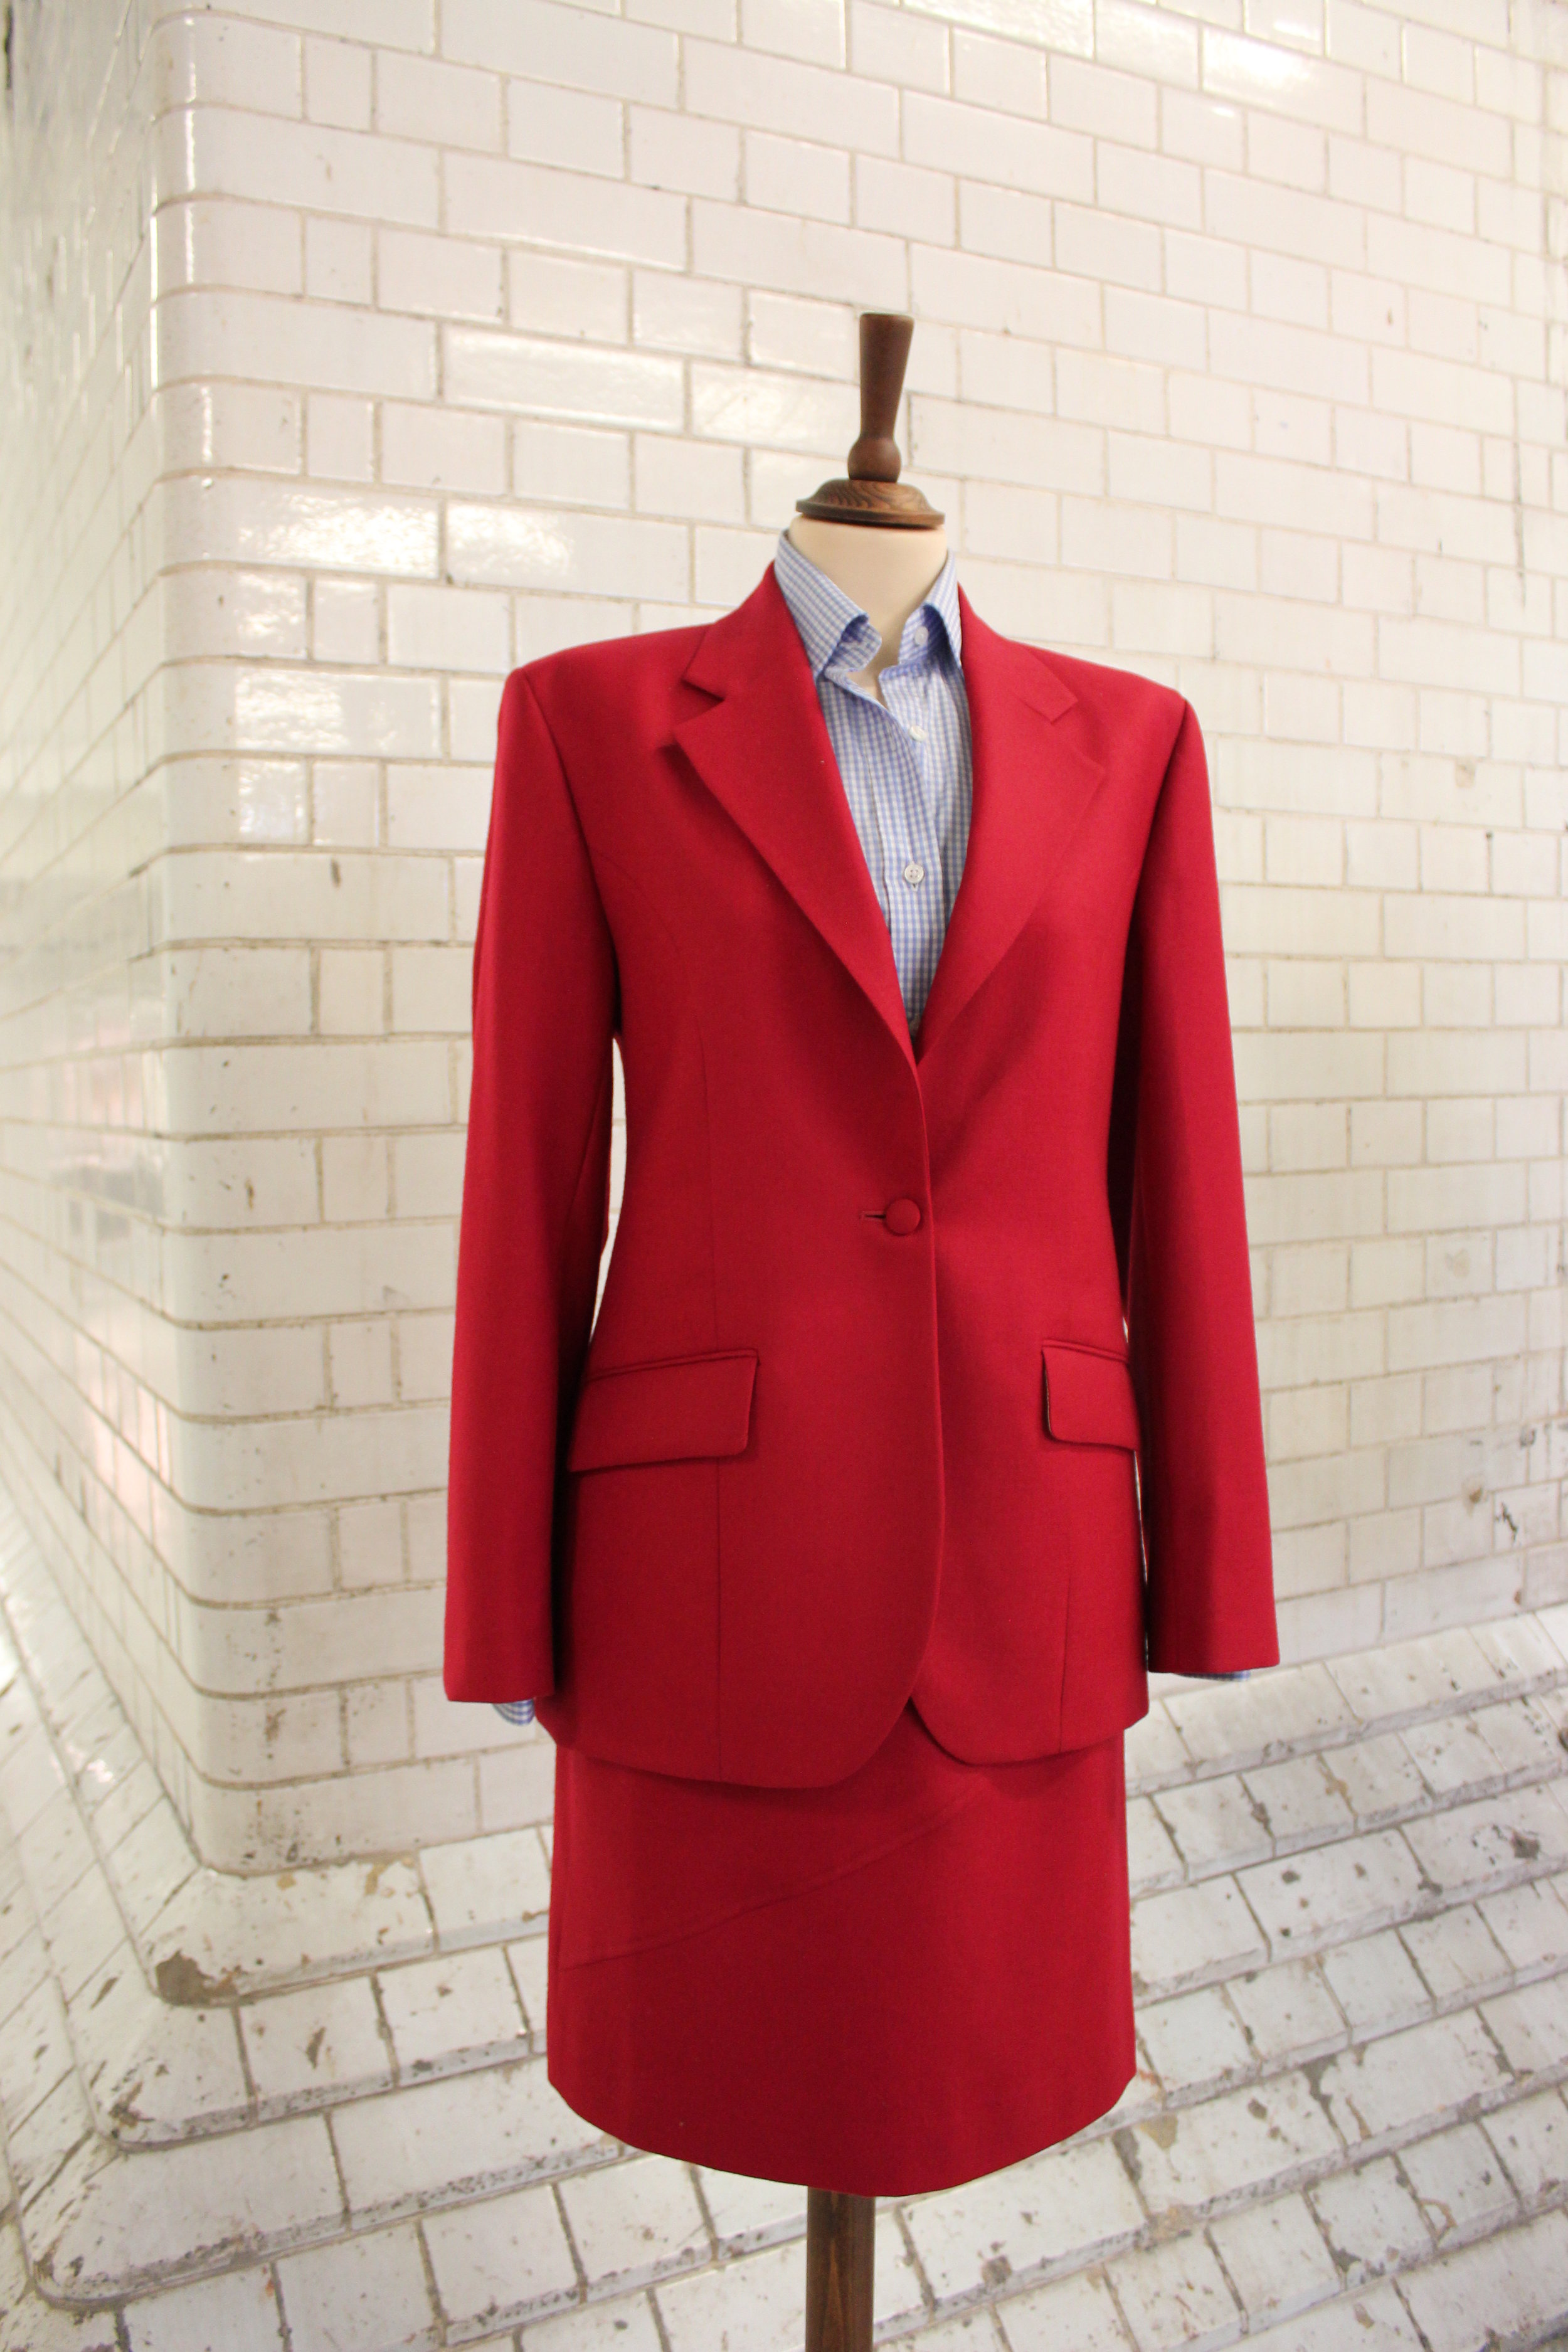 ladies-red-suit-tailor-british-all-uk-made-wool-womenswear-skirt-jacket-gingham-bespoke-shirt.JPG